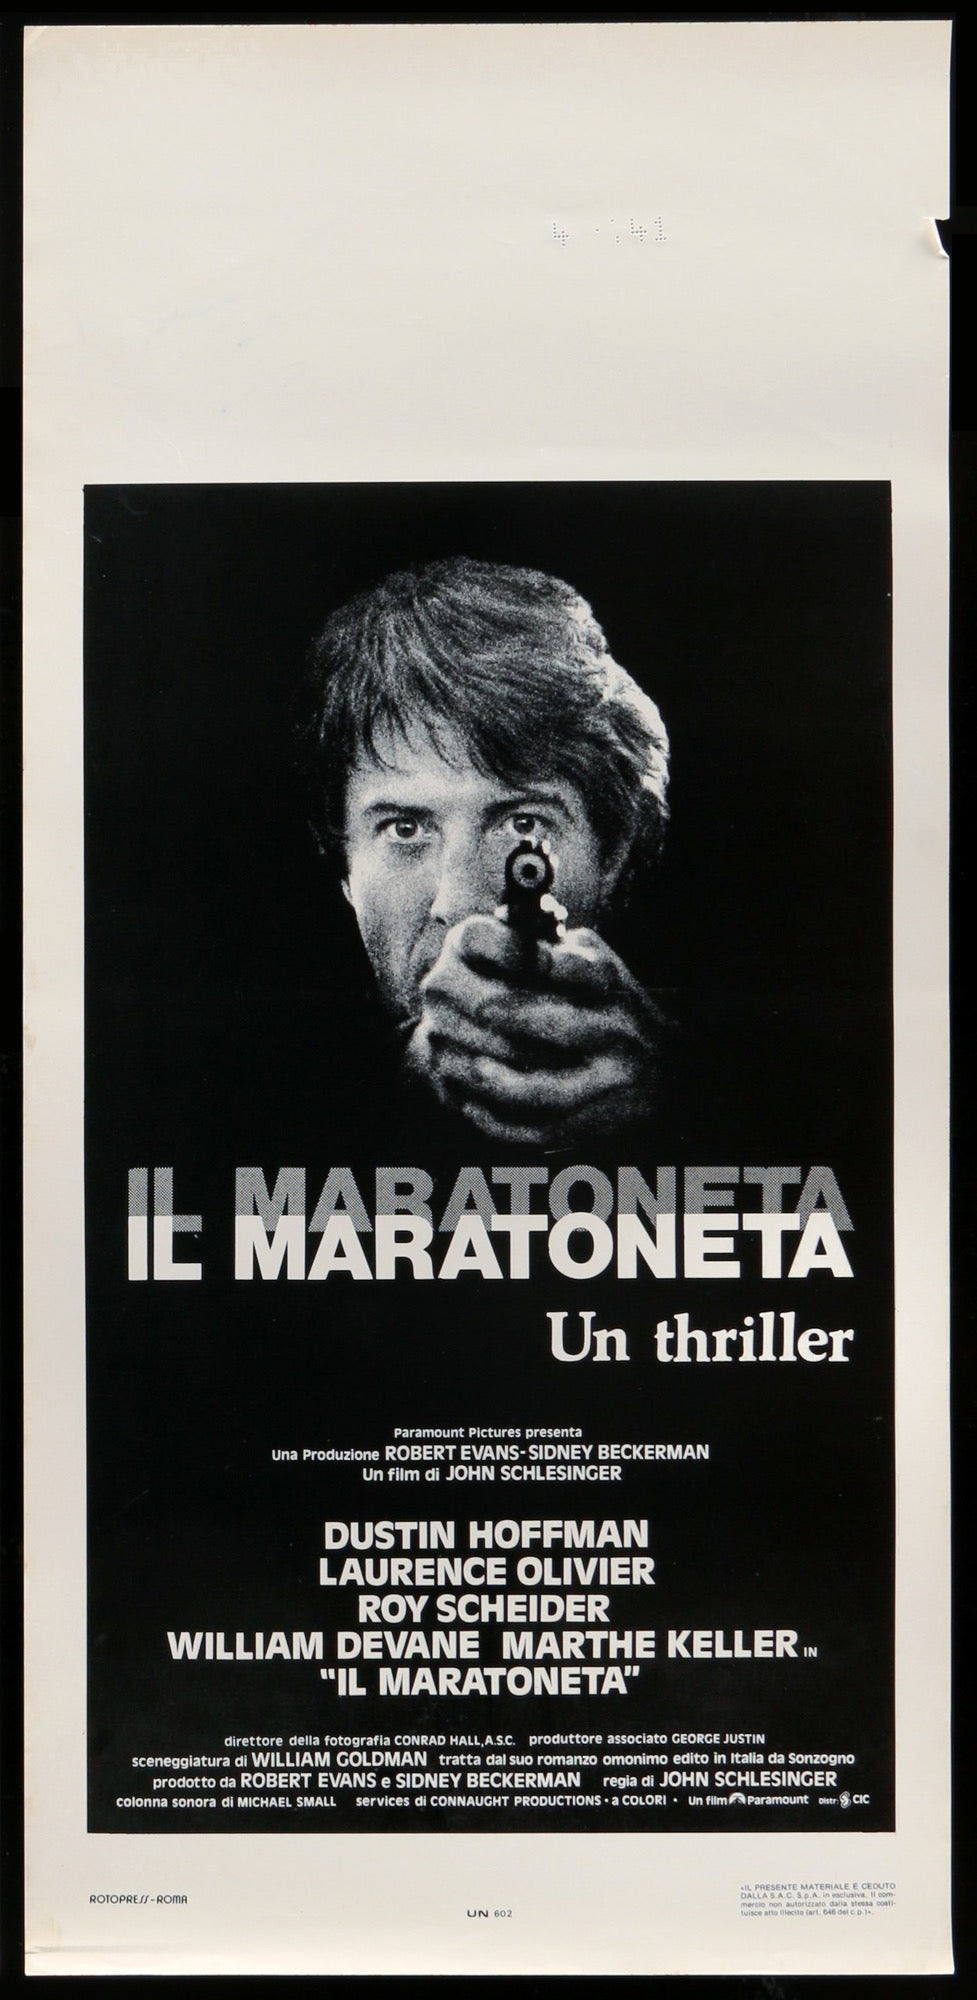 Marathon Man (1976) original movie poster for sale at Original Film Art